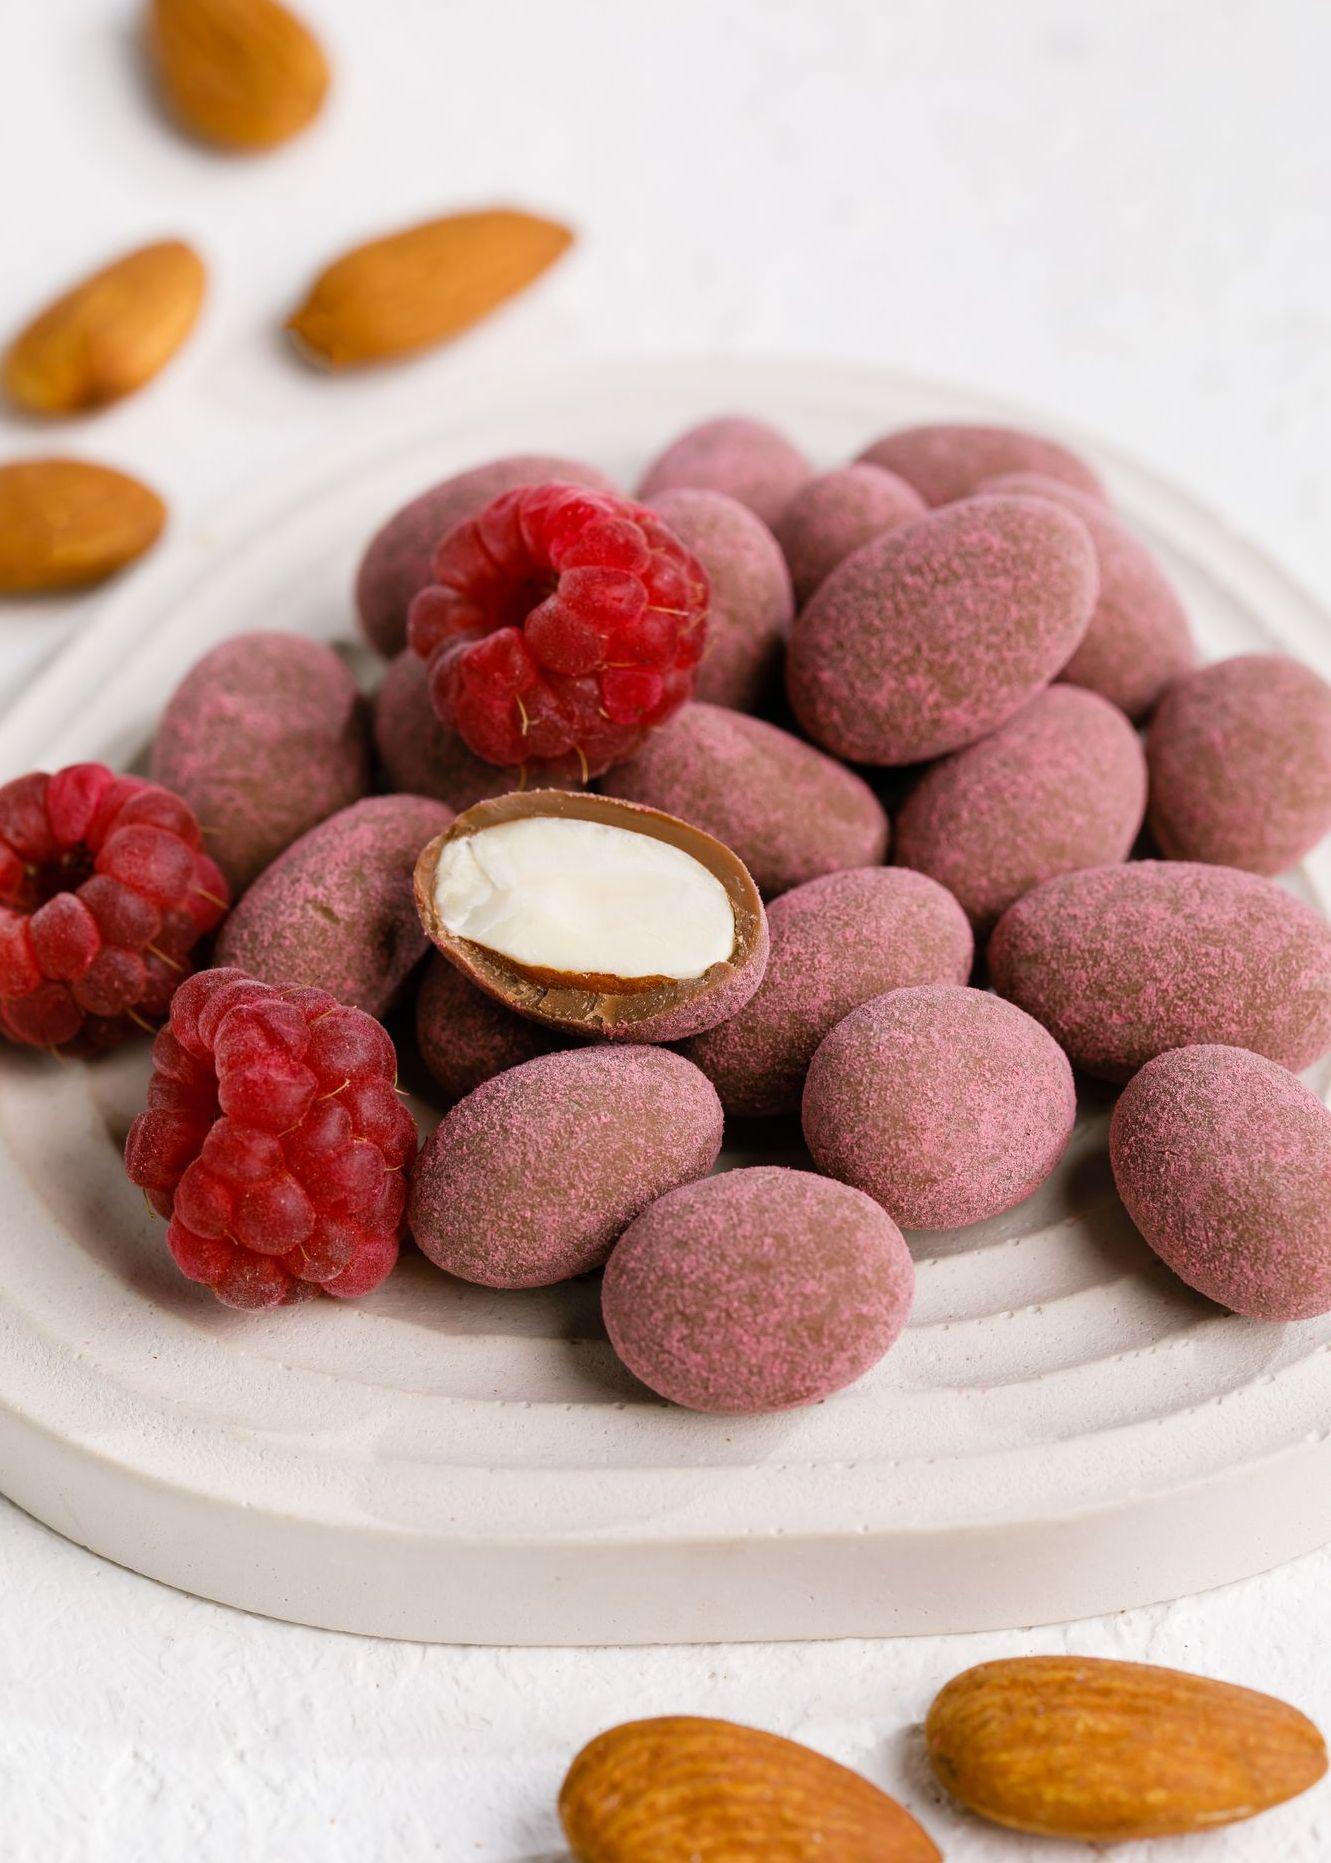 Веррин «Малина в шоколаде», пошаговый рецепт на ккал, фото, ингредиенты - Елена Шурахова